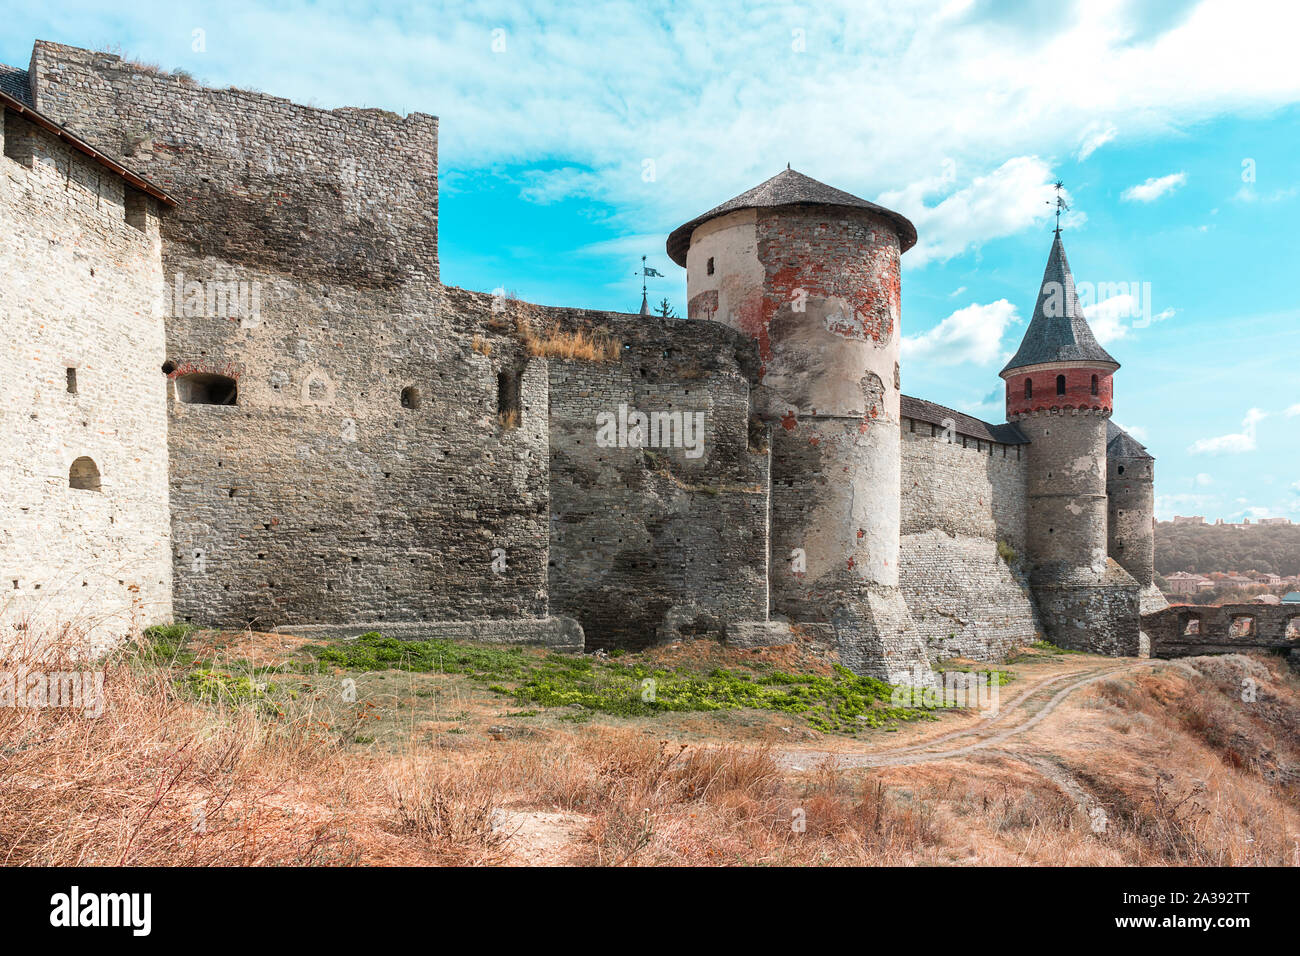 Architettura medievale dell'Ucraina - Castello di Kamenetz-Podolsk, Sep.2019 Foto Stock